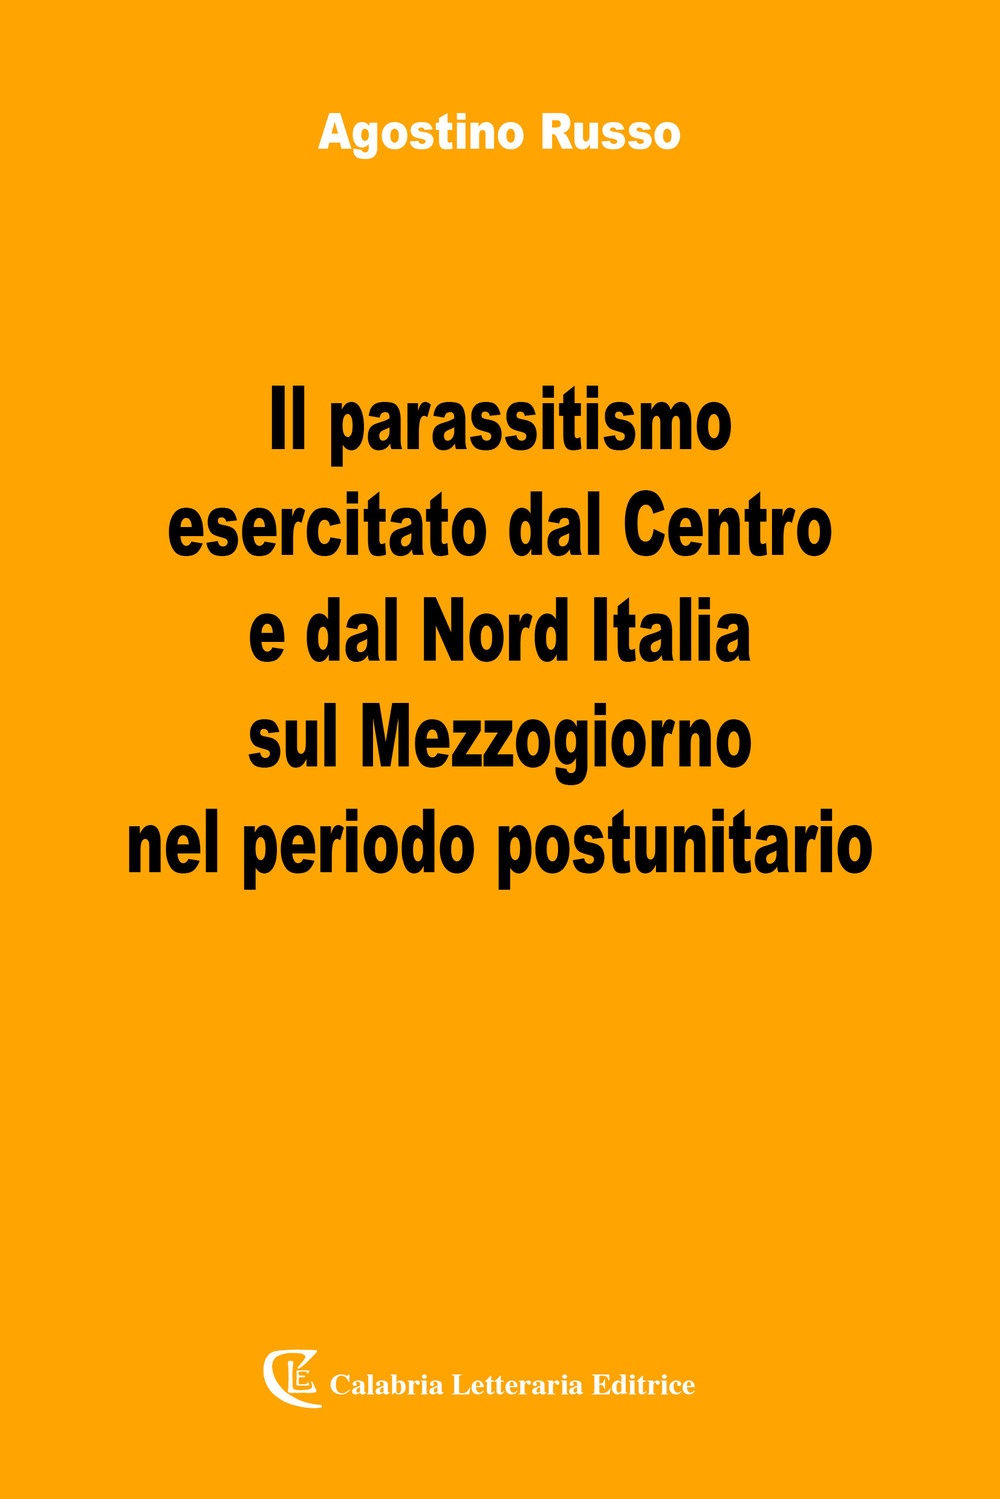 Il parassitismo esercitato dal Centro e dal Nord Italia